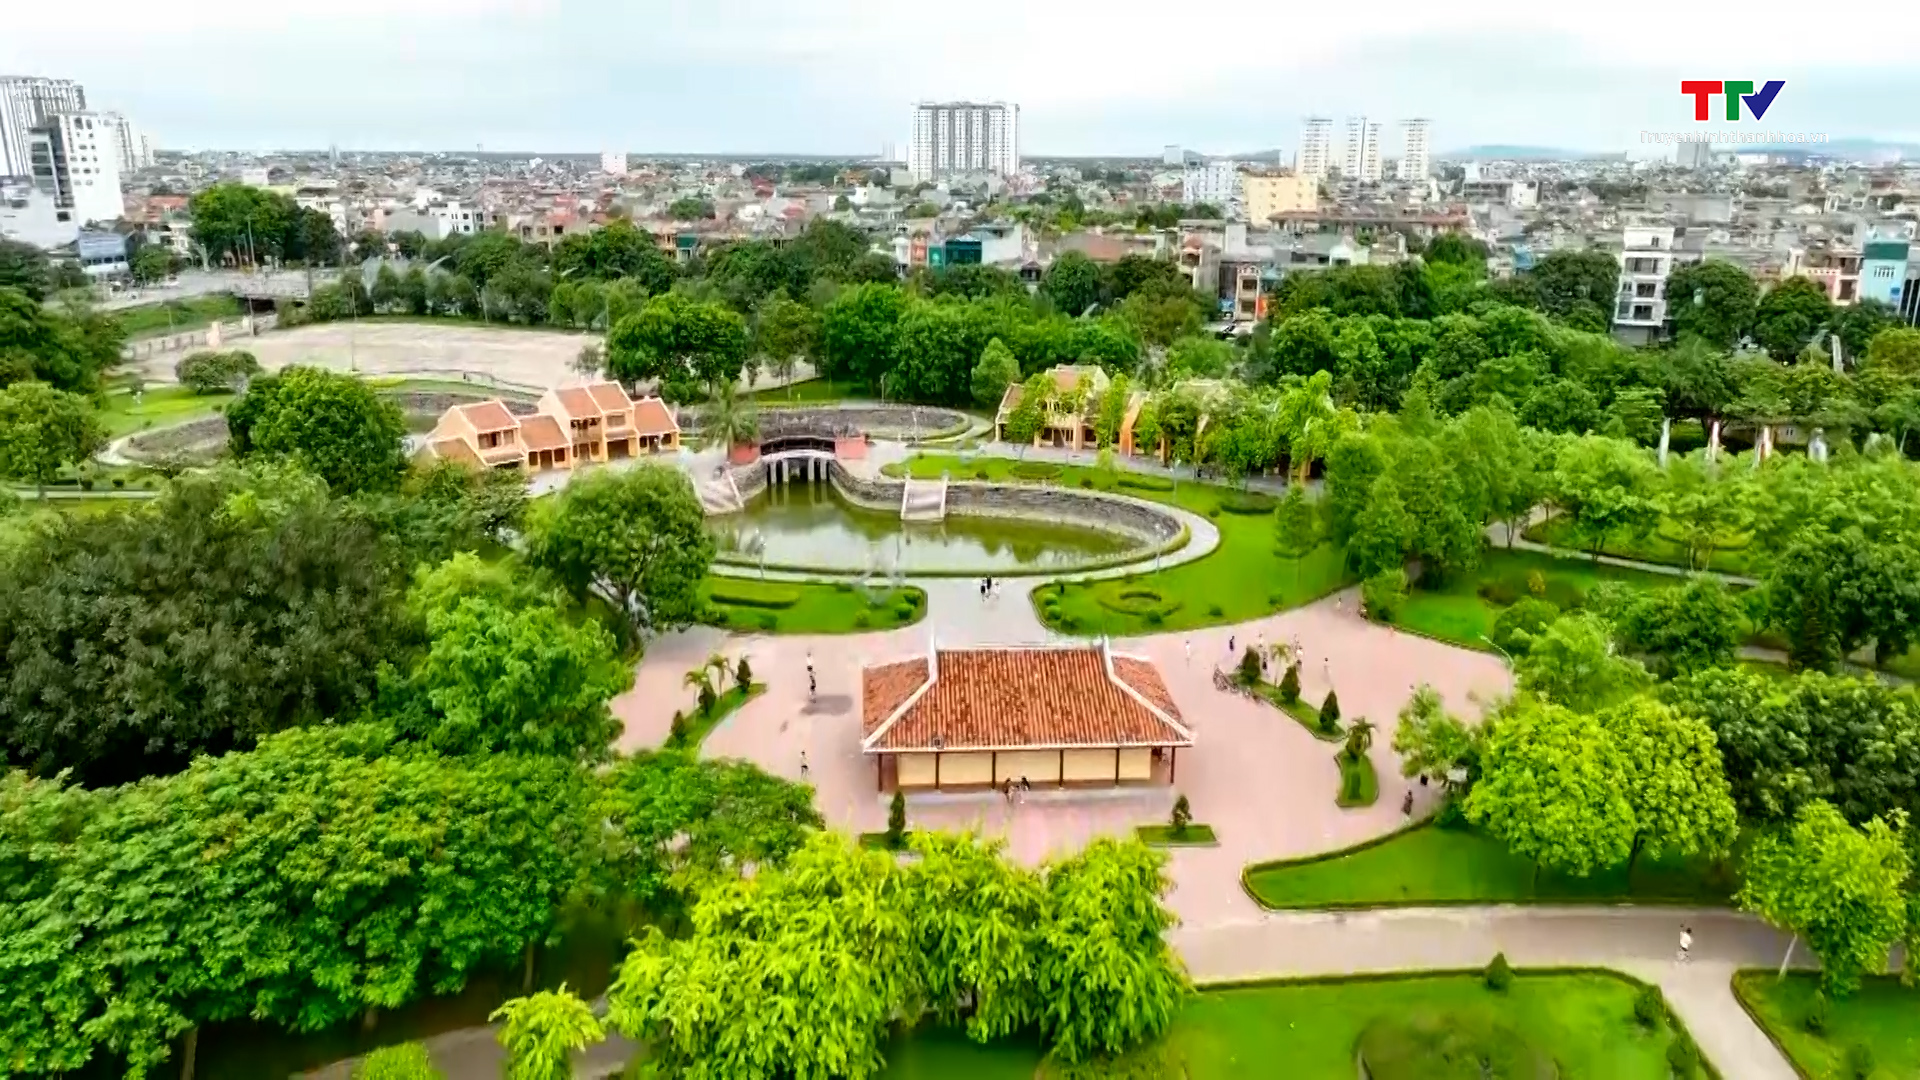 Nâng cấp, cải tạo Công viên Hội An, thành phố Thanh Hóa  - Ảnh 2.